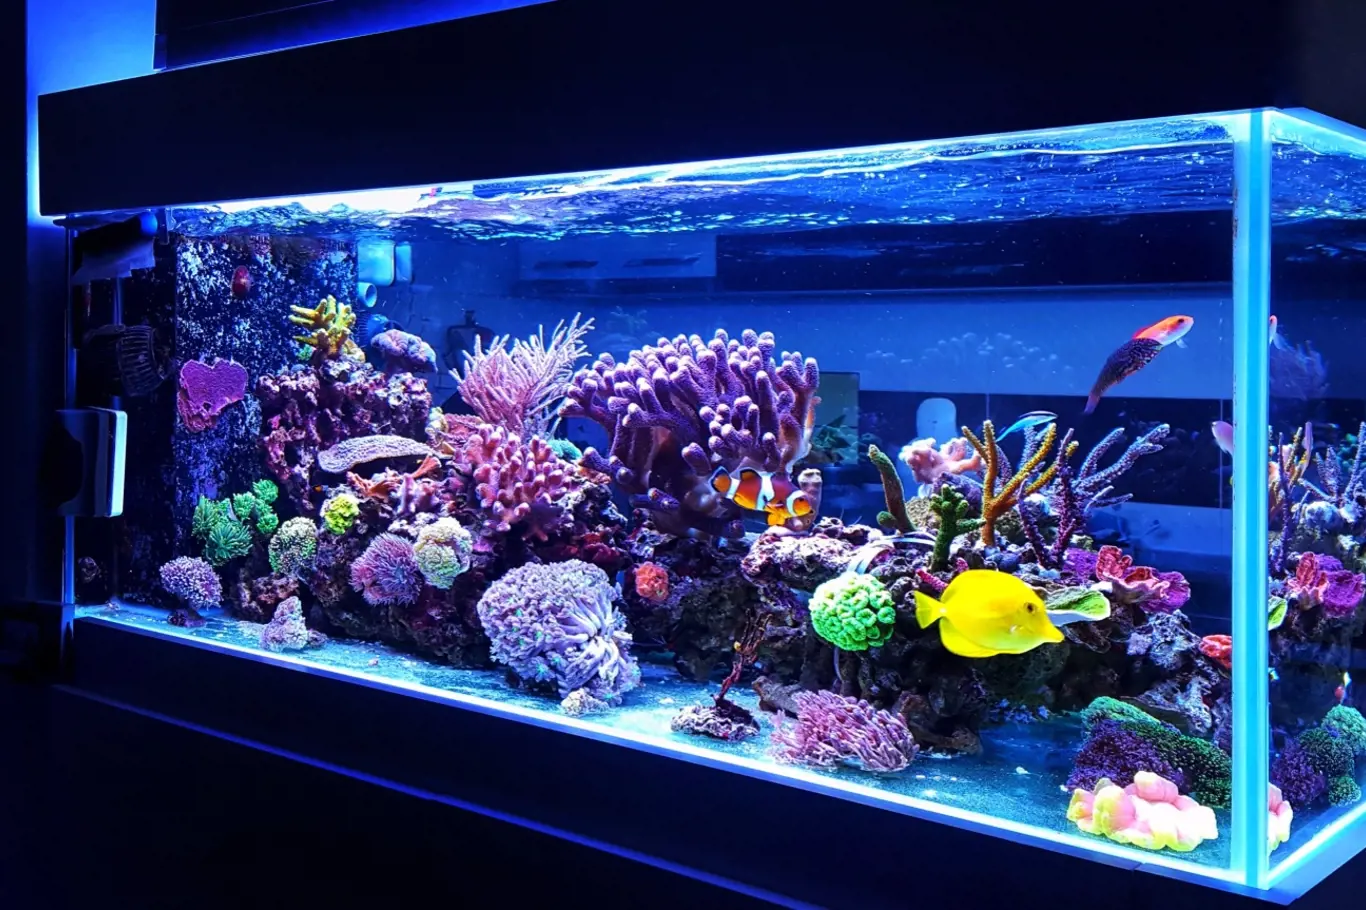 Mořské akvárium